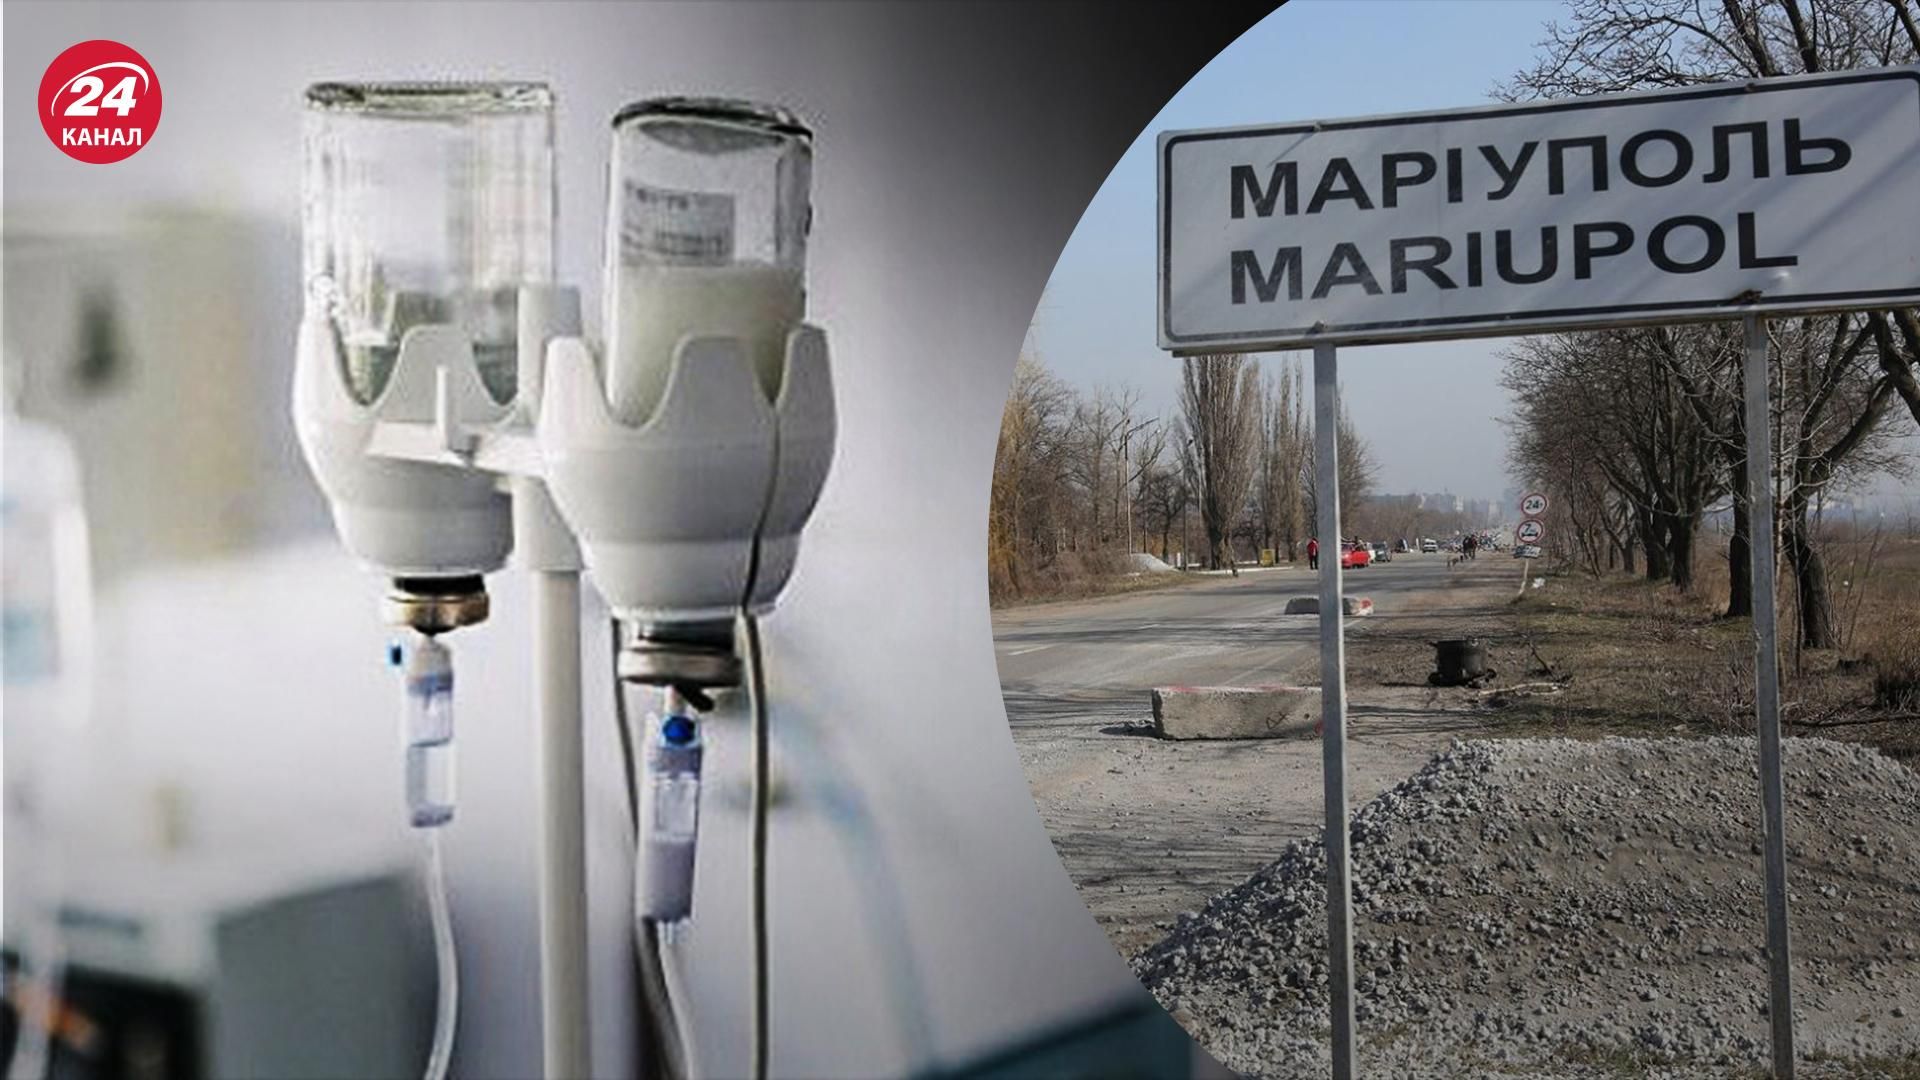 Польща готова прийняти на лікування поранених та хворих з Маріуполя